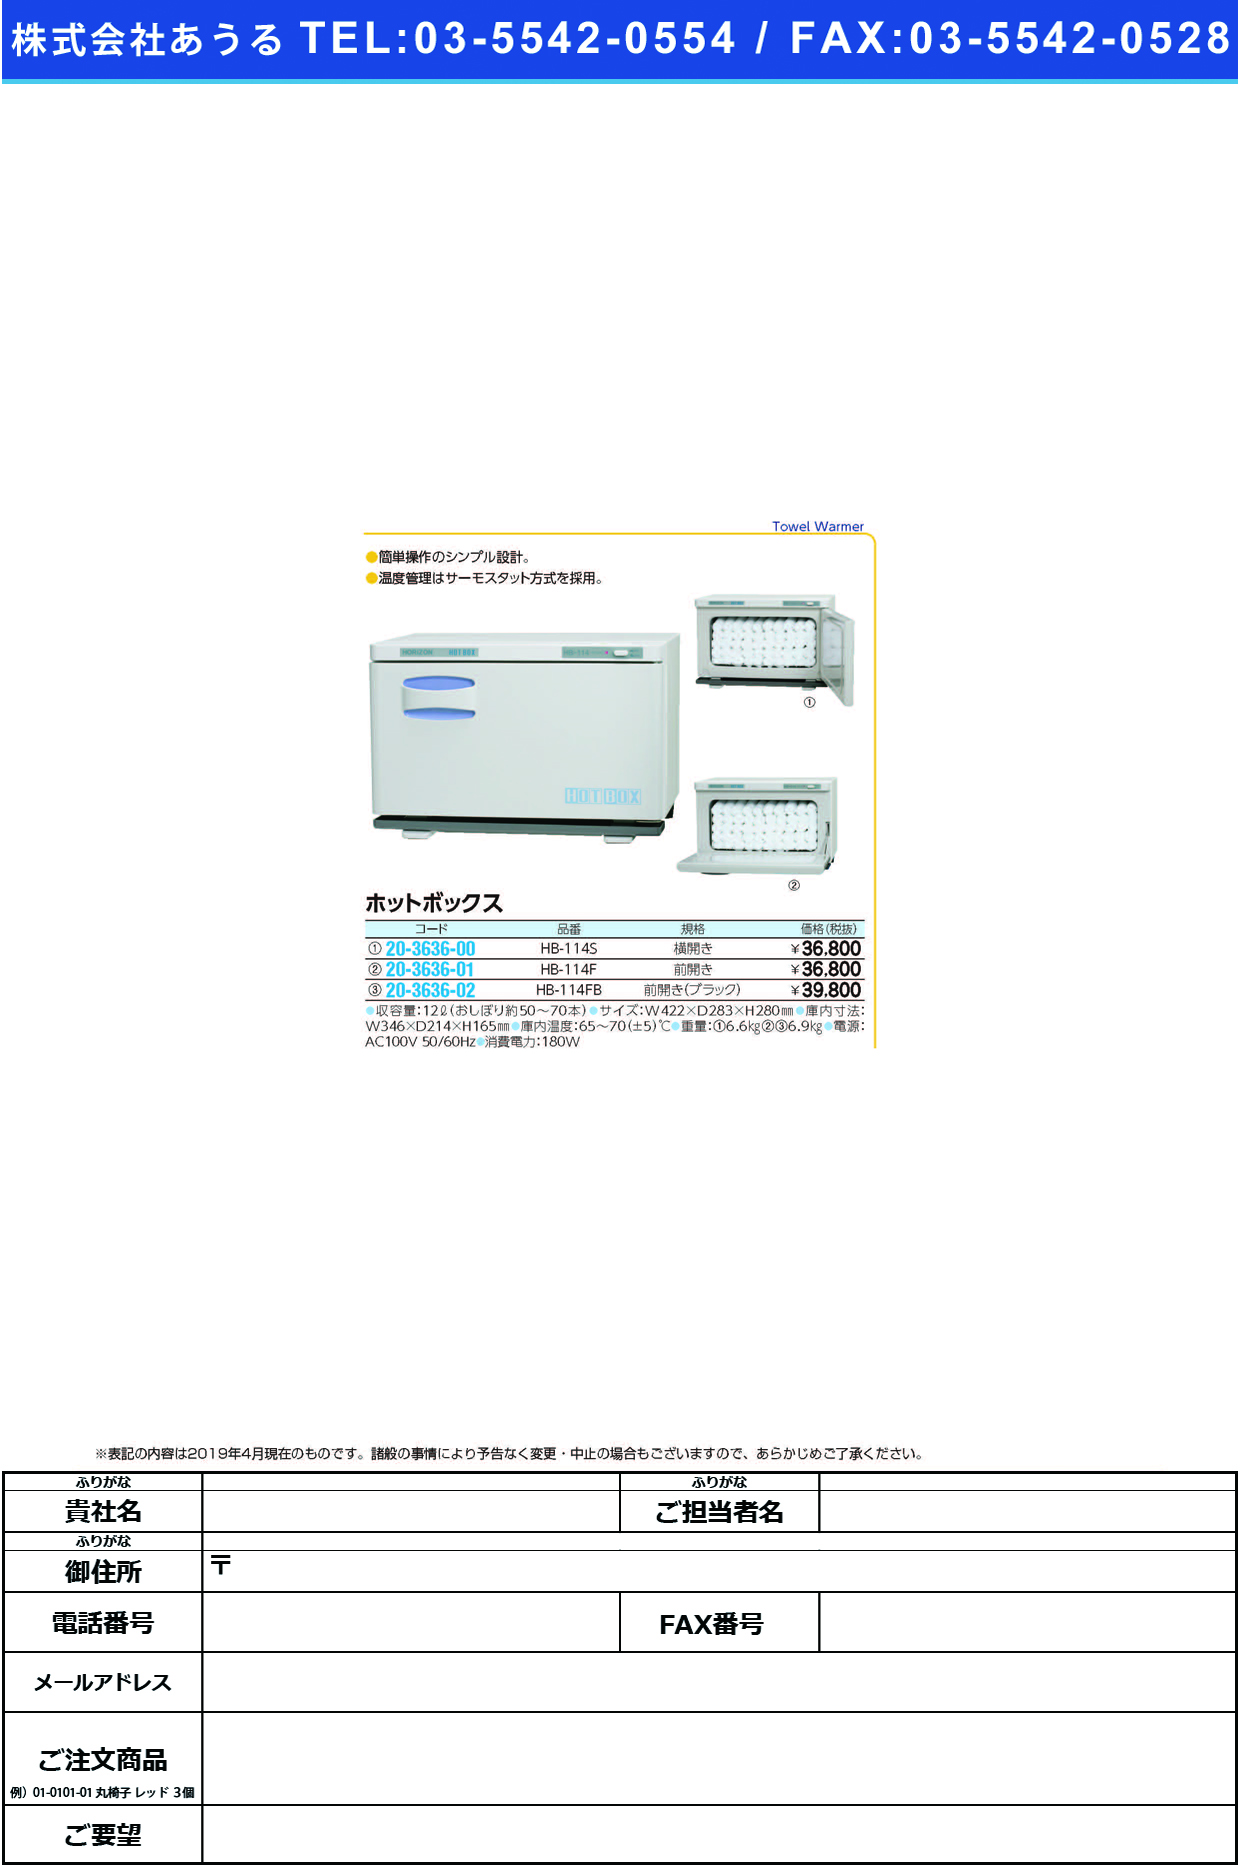 (20-3636-00)ホットボックス（横開き） HB-114S ﾎｯﾄﾎﾞｯｸｽ(ﾖｺﾋﾞﾗｷ)【1台単位】【2019年カタログ商品】